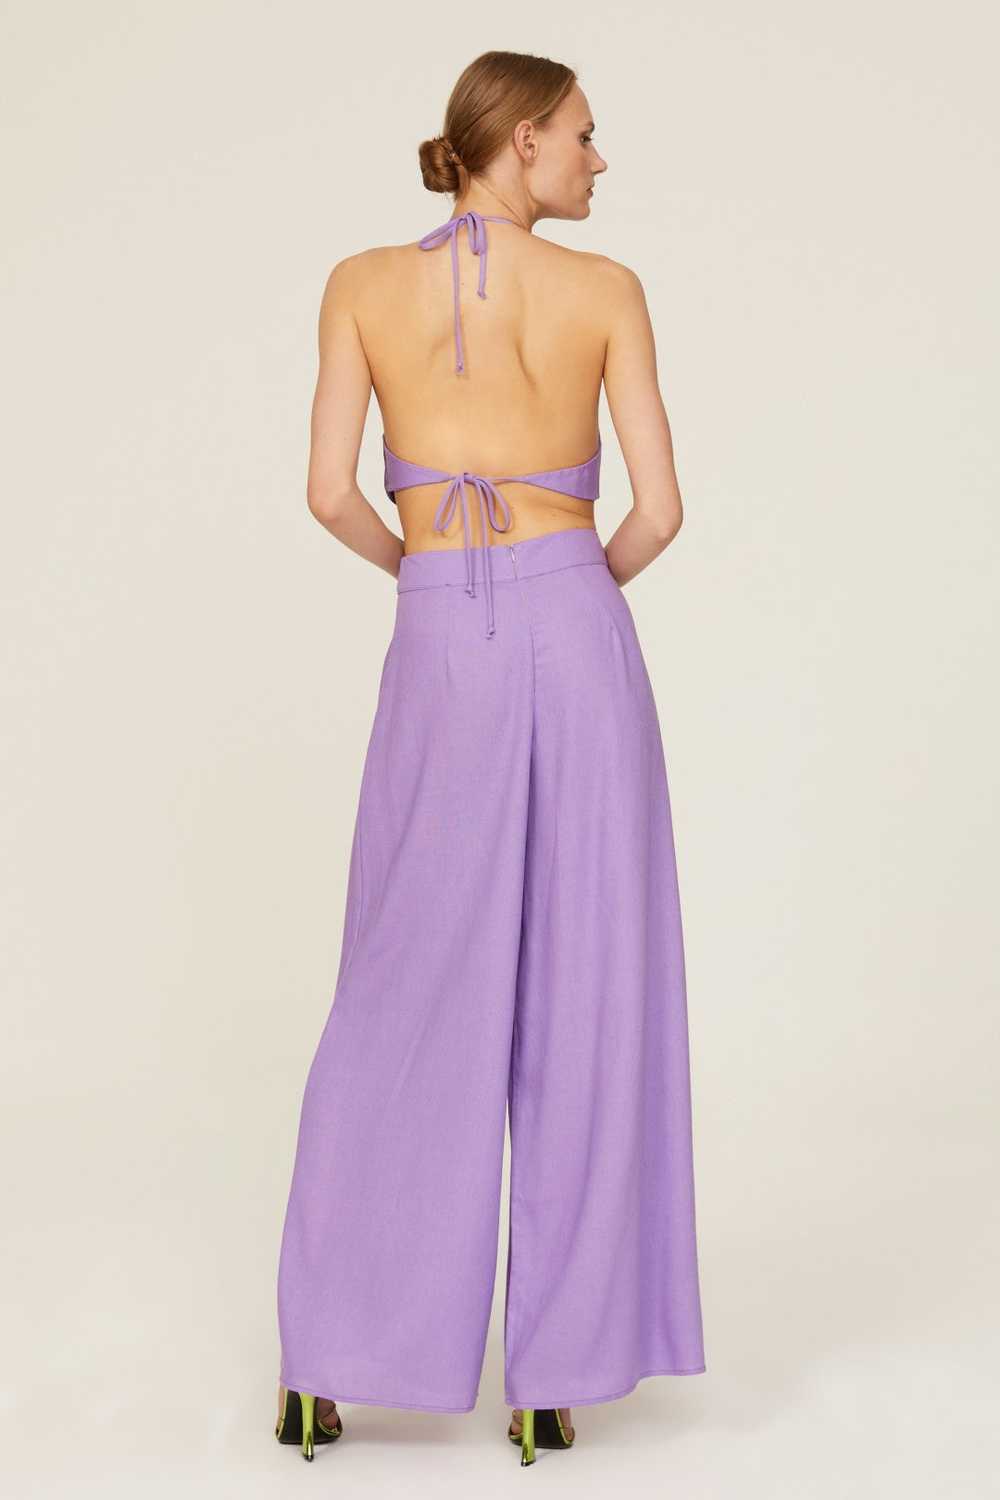 Louna Lavender Backless Jumpsuit - image 3